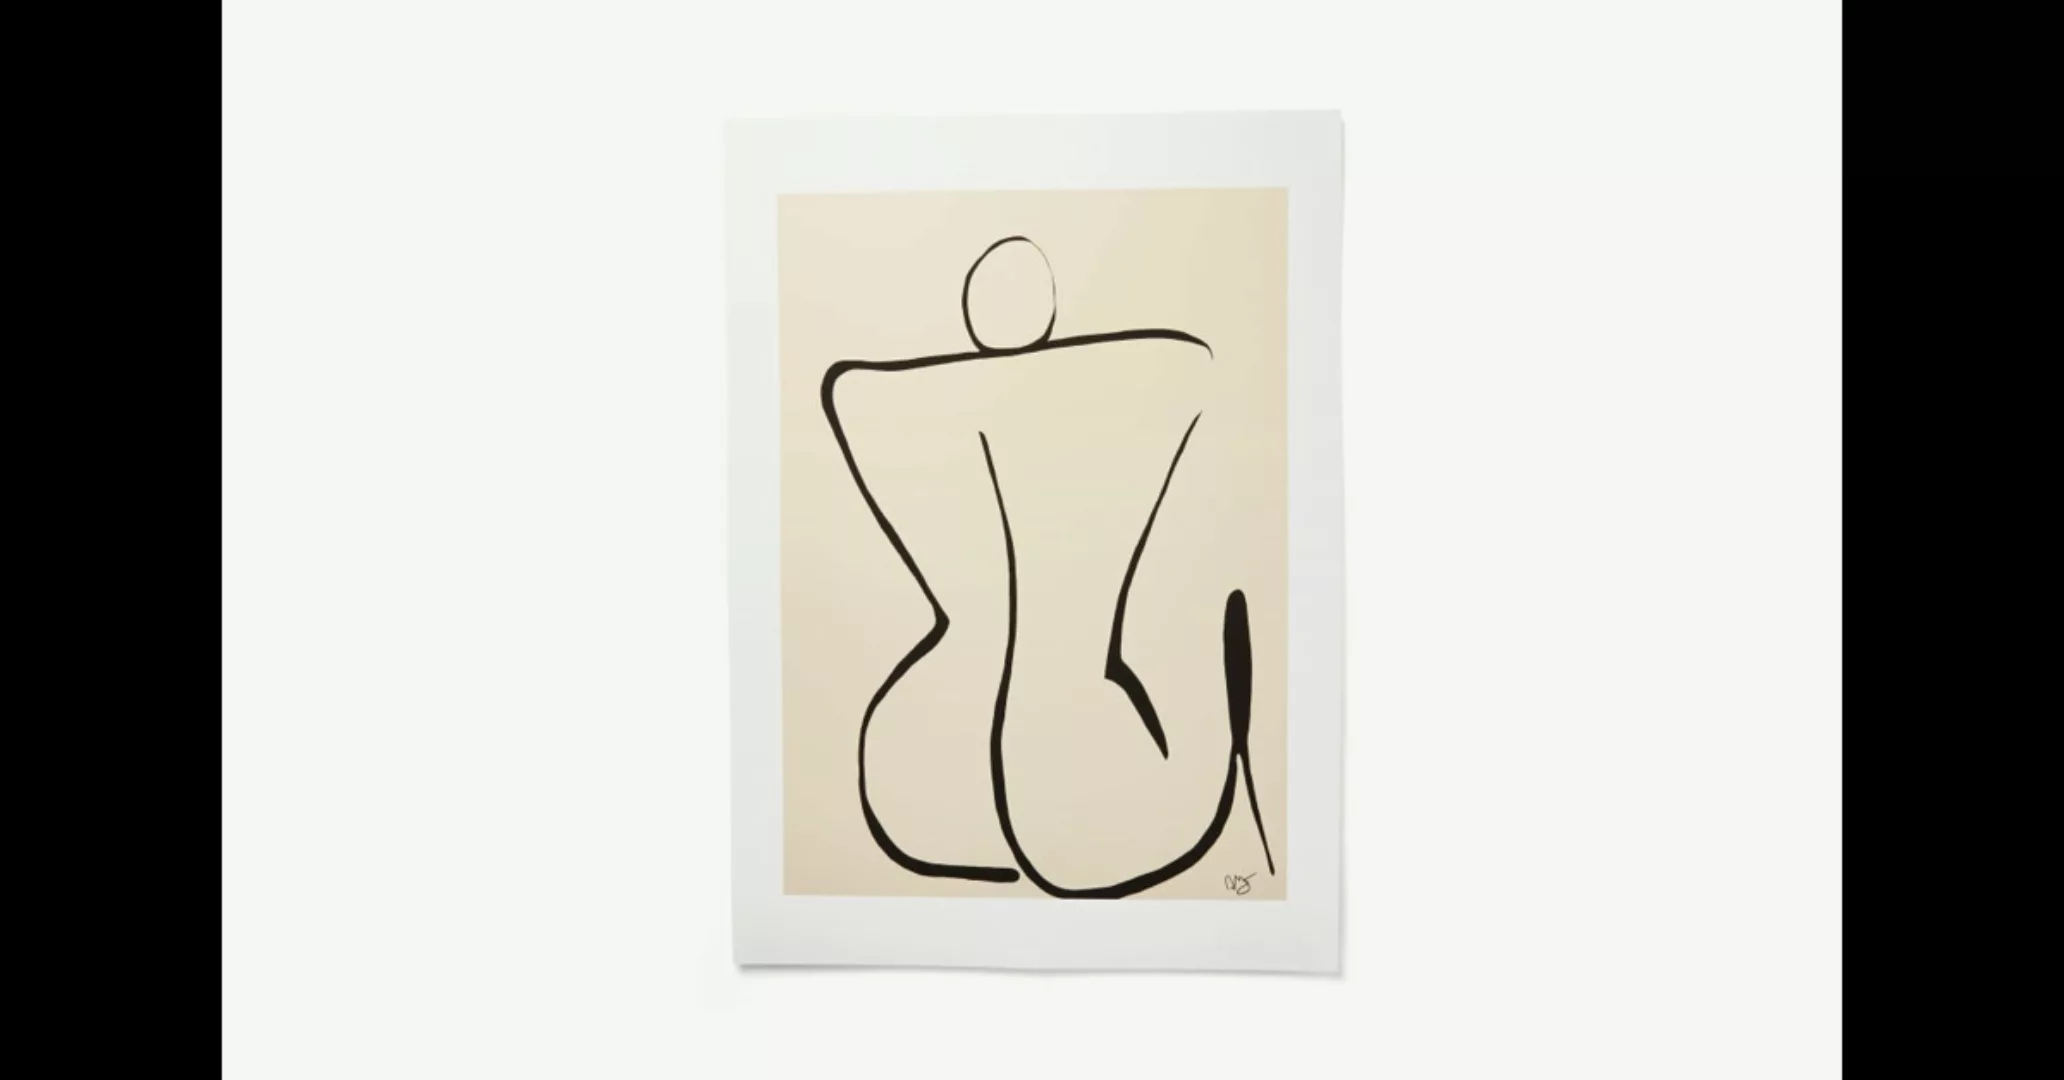 Silhouette von Anna Moerner (50 x 70 cm) - MADE.com günstig online kaufen